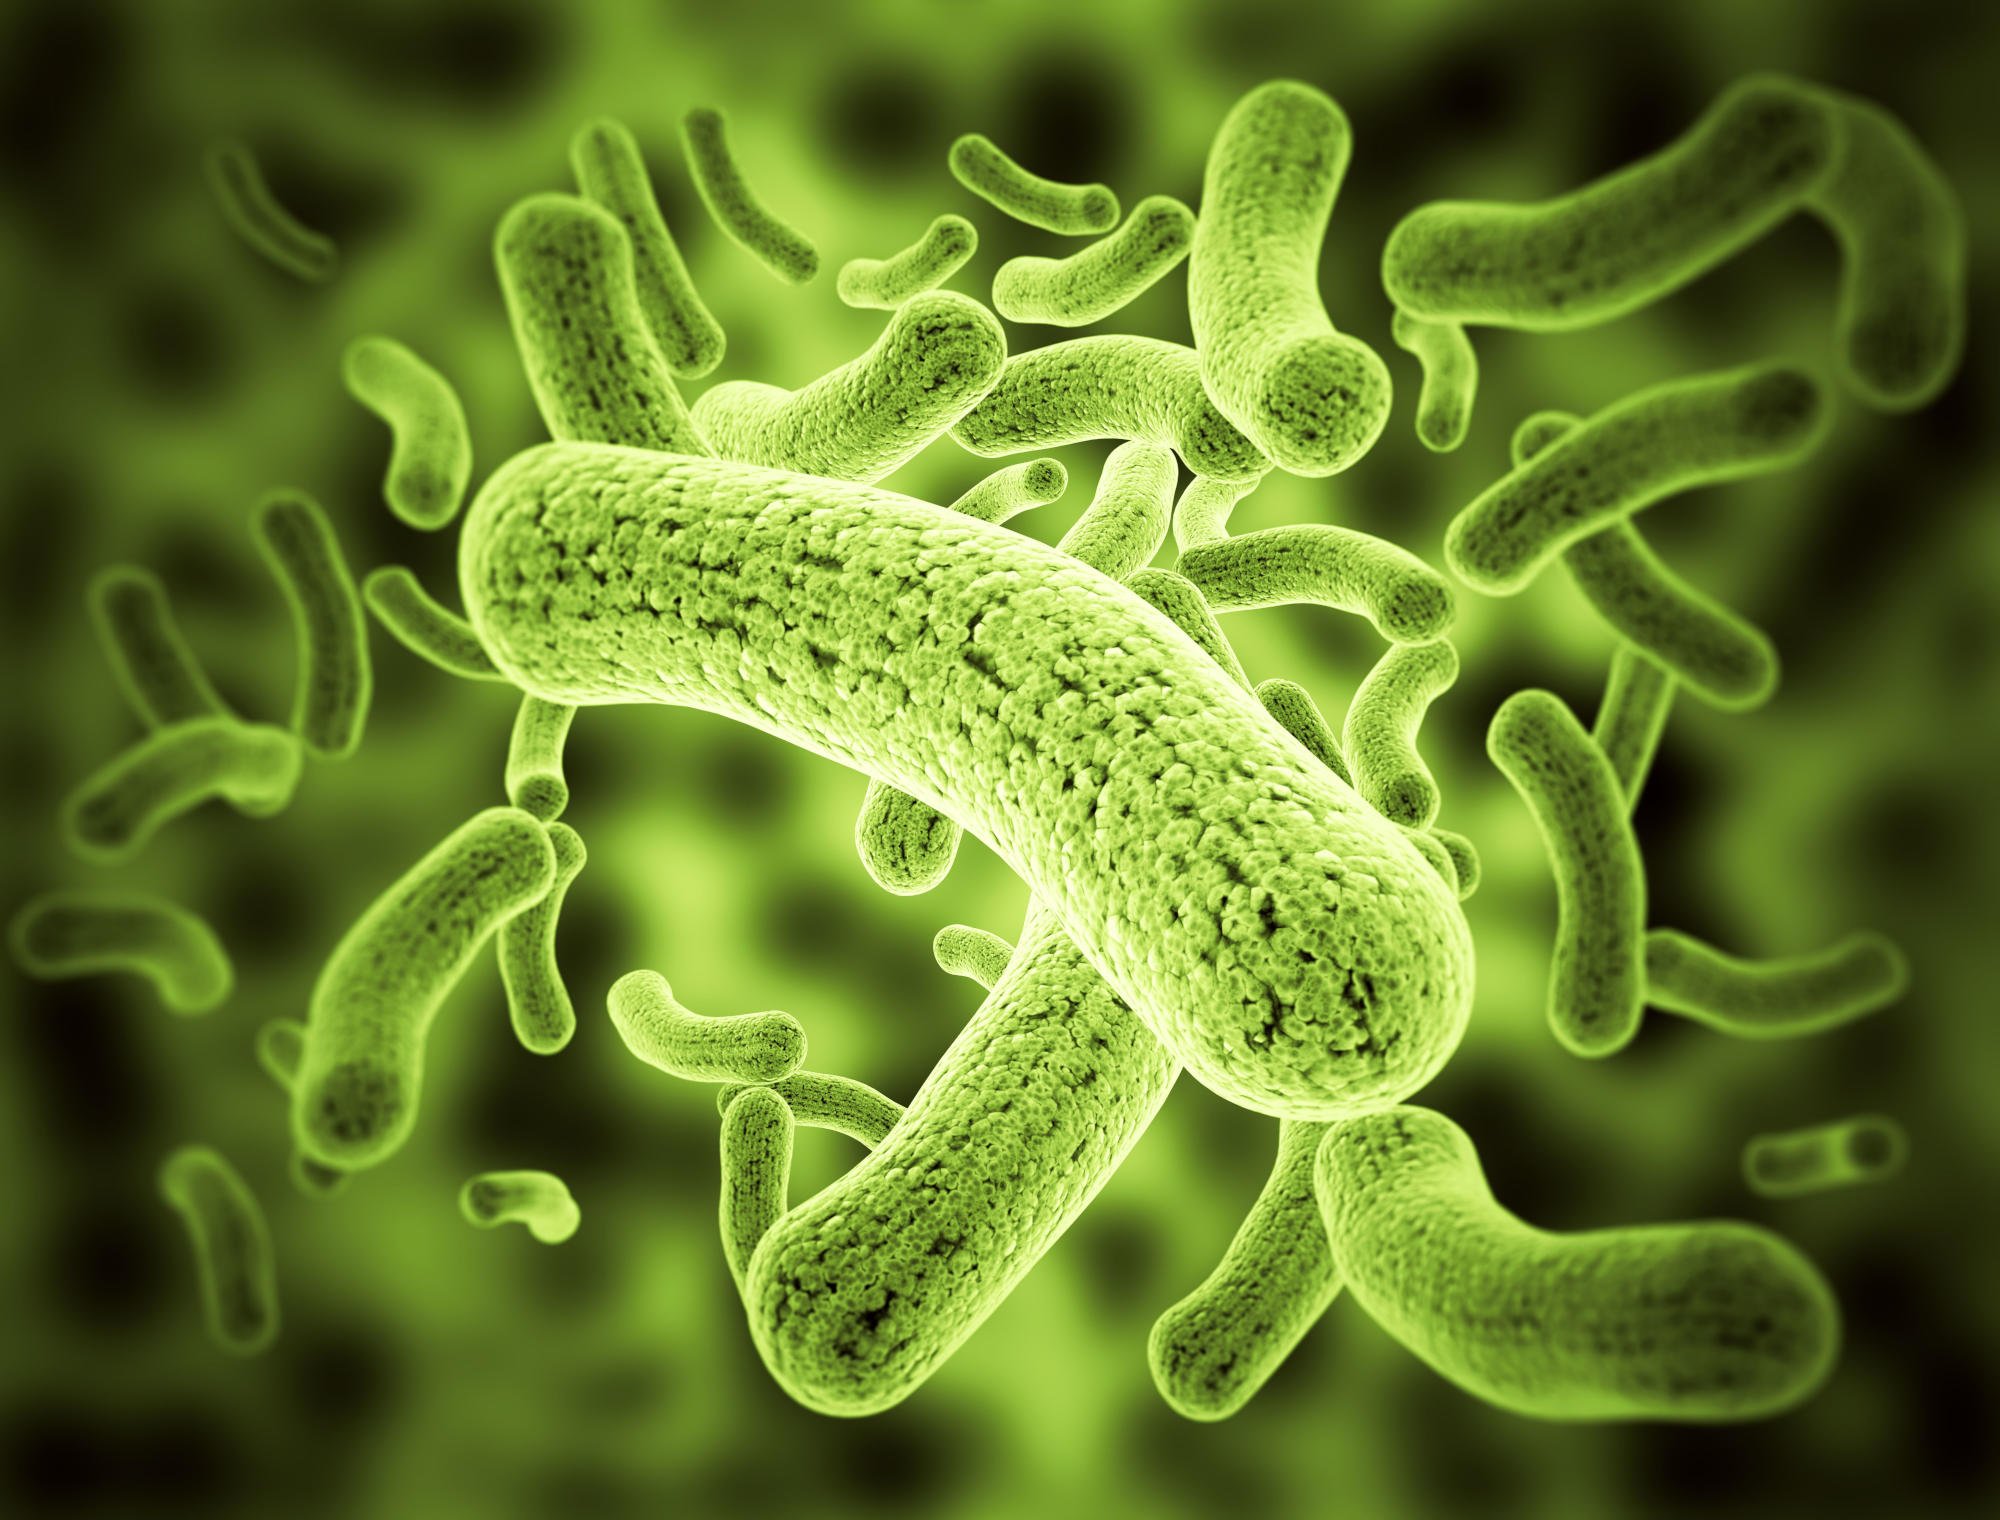 Para peneliti telah menemukan cara baru untuk mengatasi resistensi antimikroba